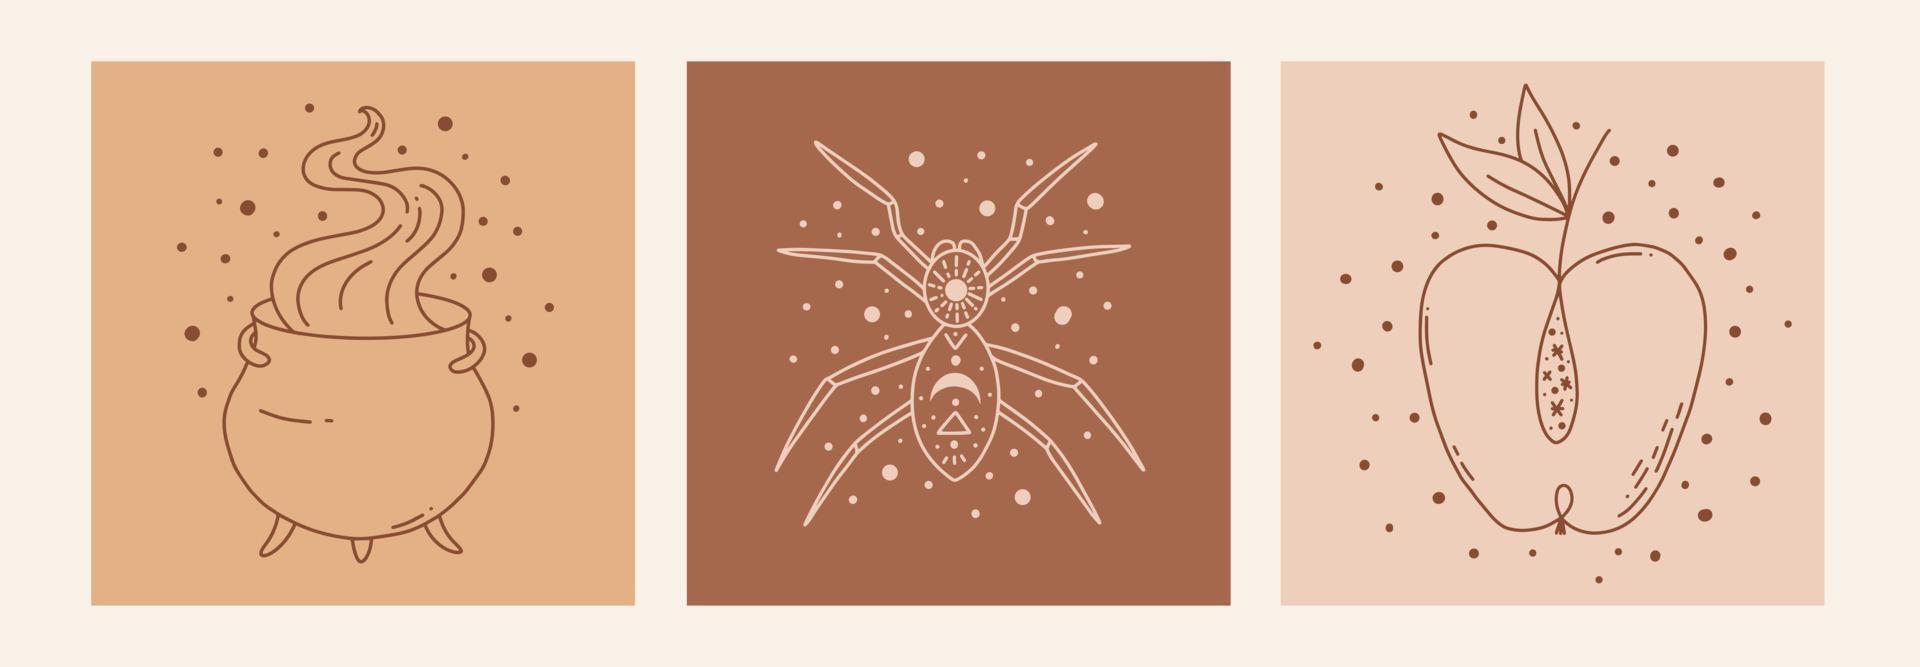 Boho Mystic Doodle Esoterisches Set. Magic Line Art Poster mit Kessel, Spinne, Apfel. böhmische moderne vektorillustration vektor